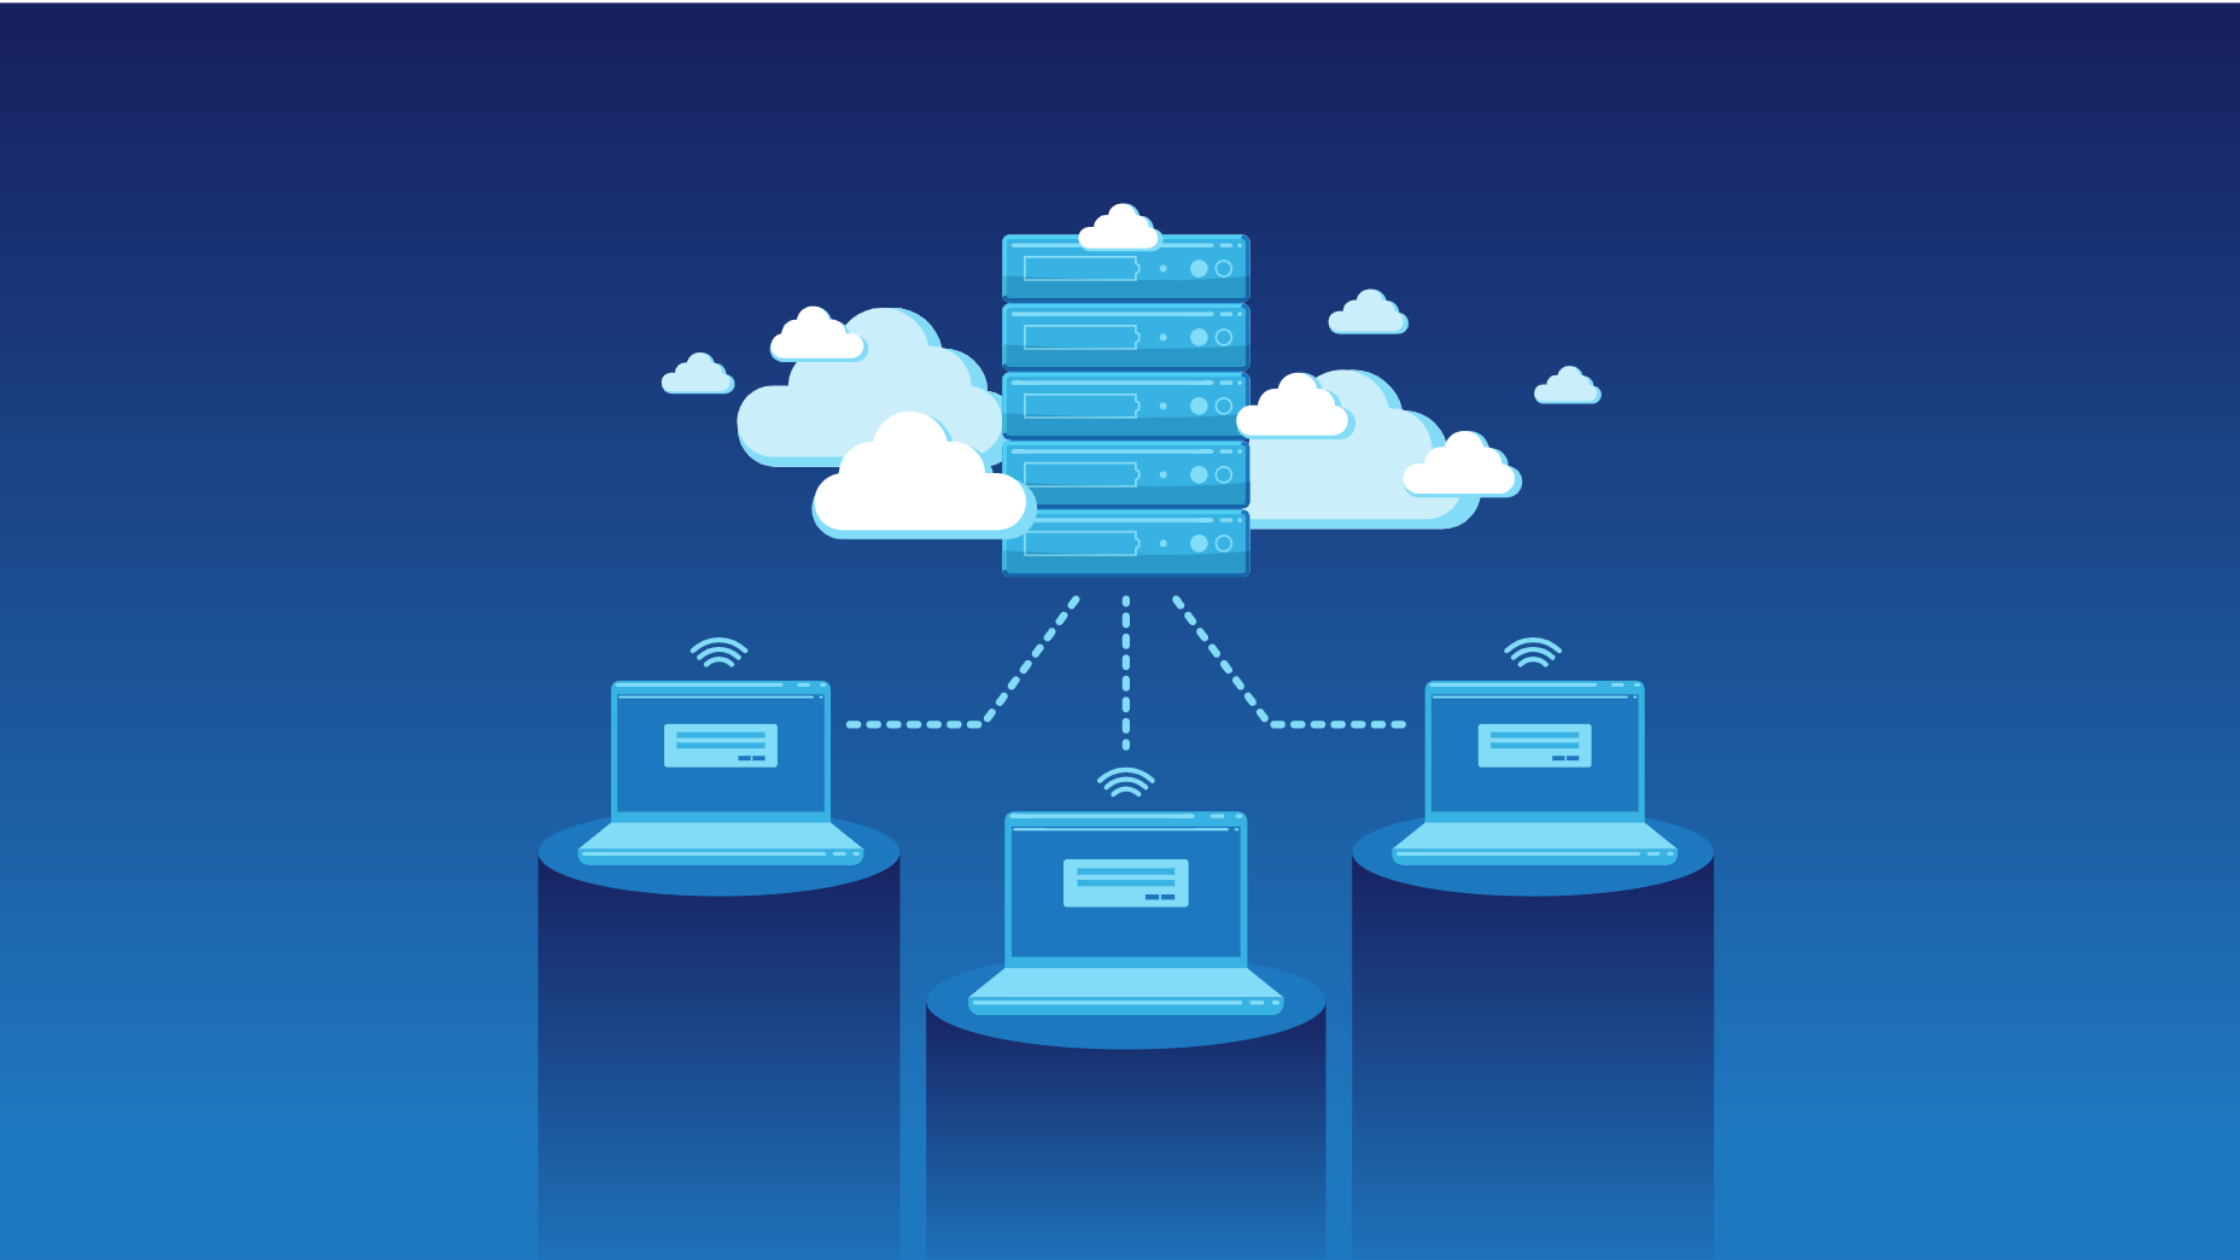 Máy chủ đám mây là một dịch vụ lưu trữ dữ liệu trên nền tảng đám mây